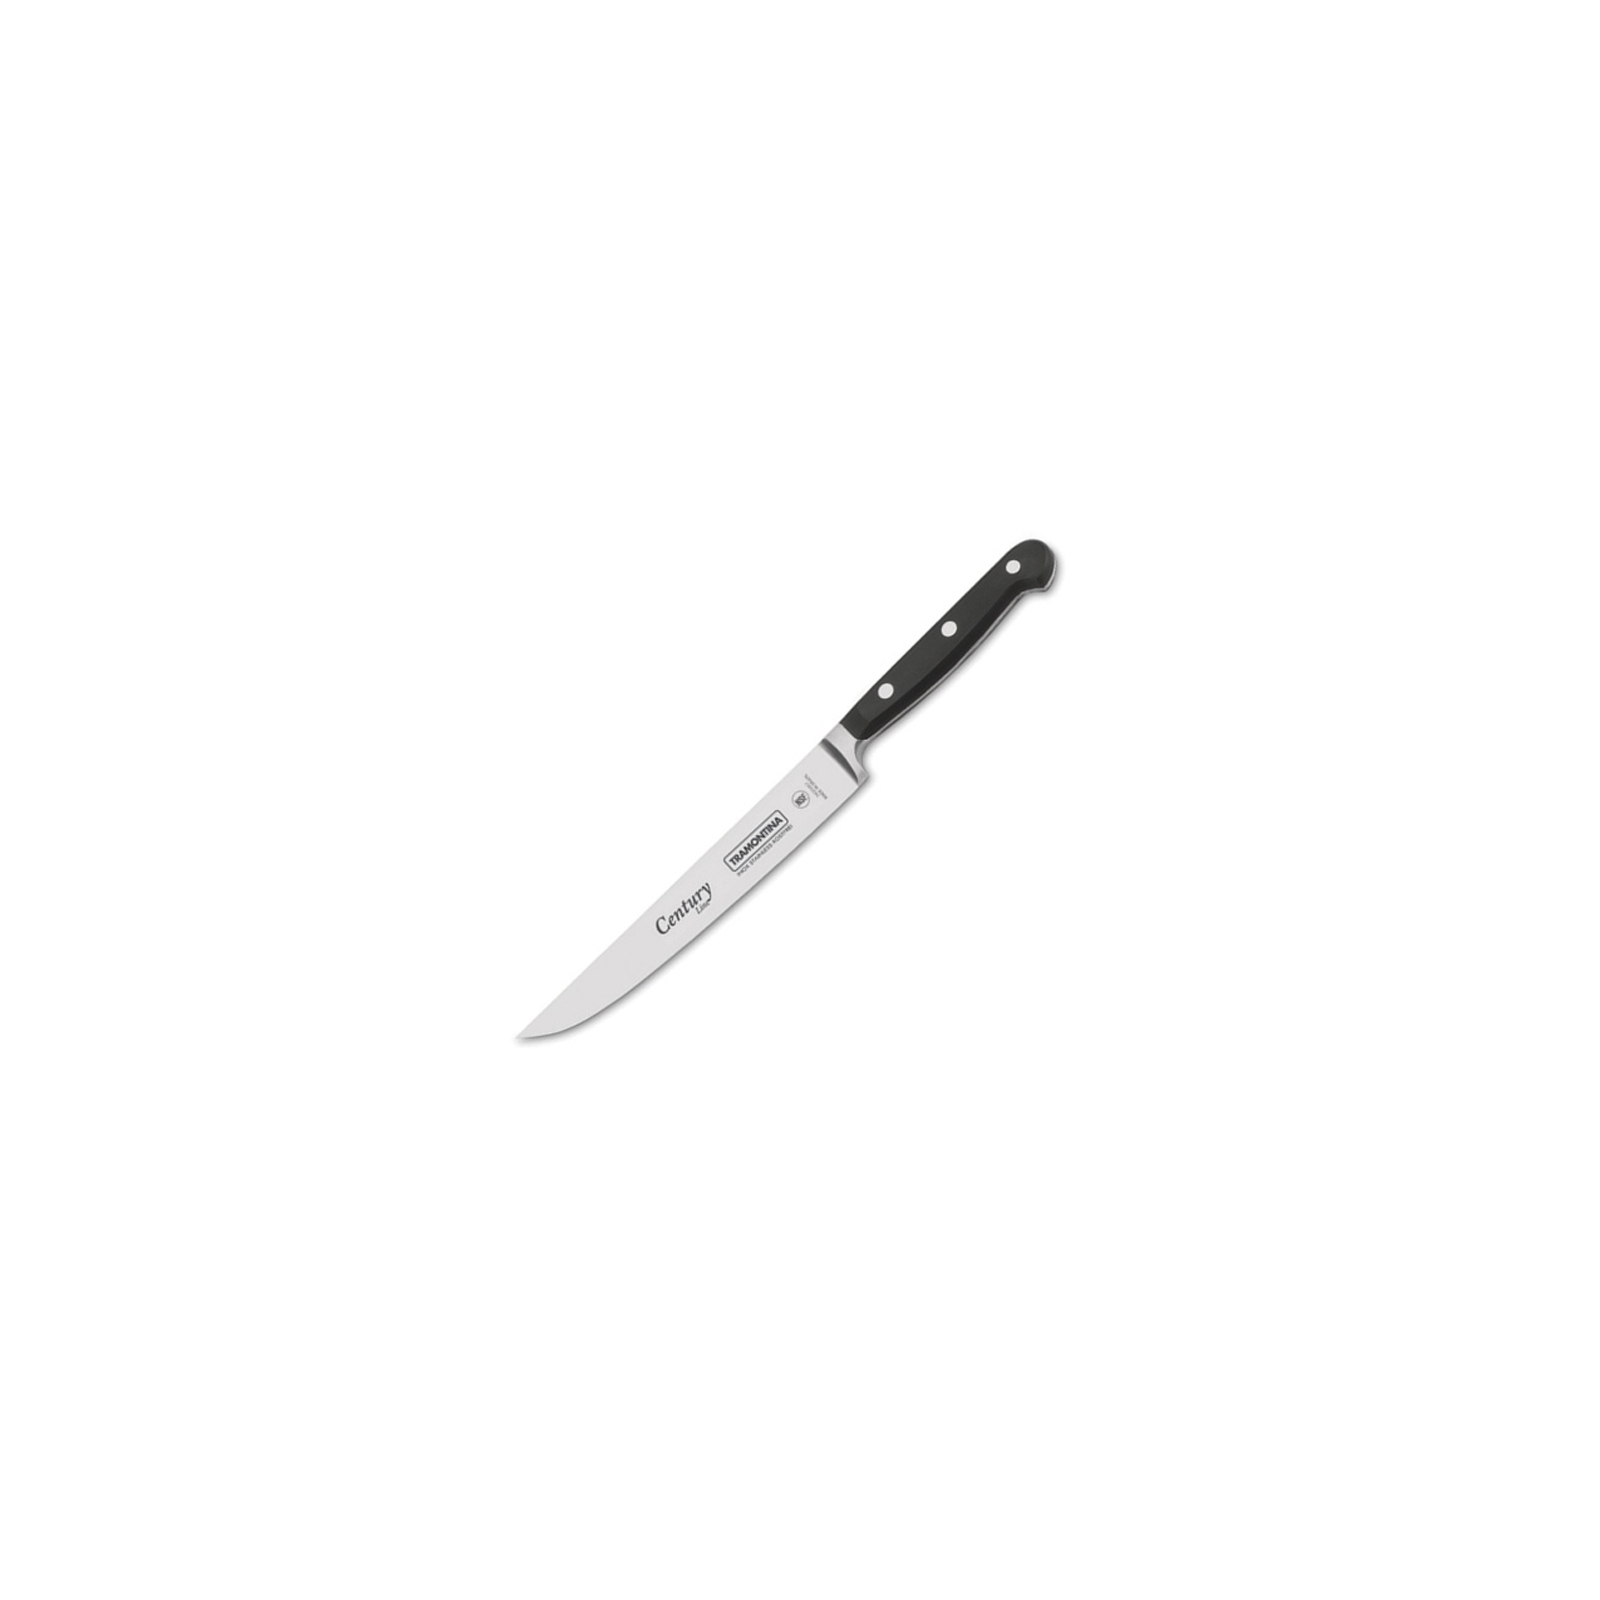 Кухонный нож Tramontina Century универсальный 203 мм, инд. упаковка Black (24007/108)